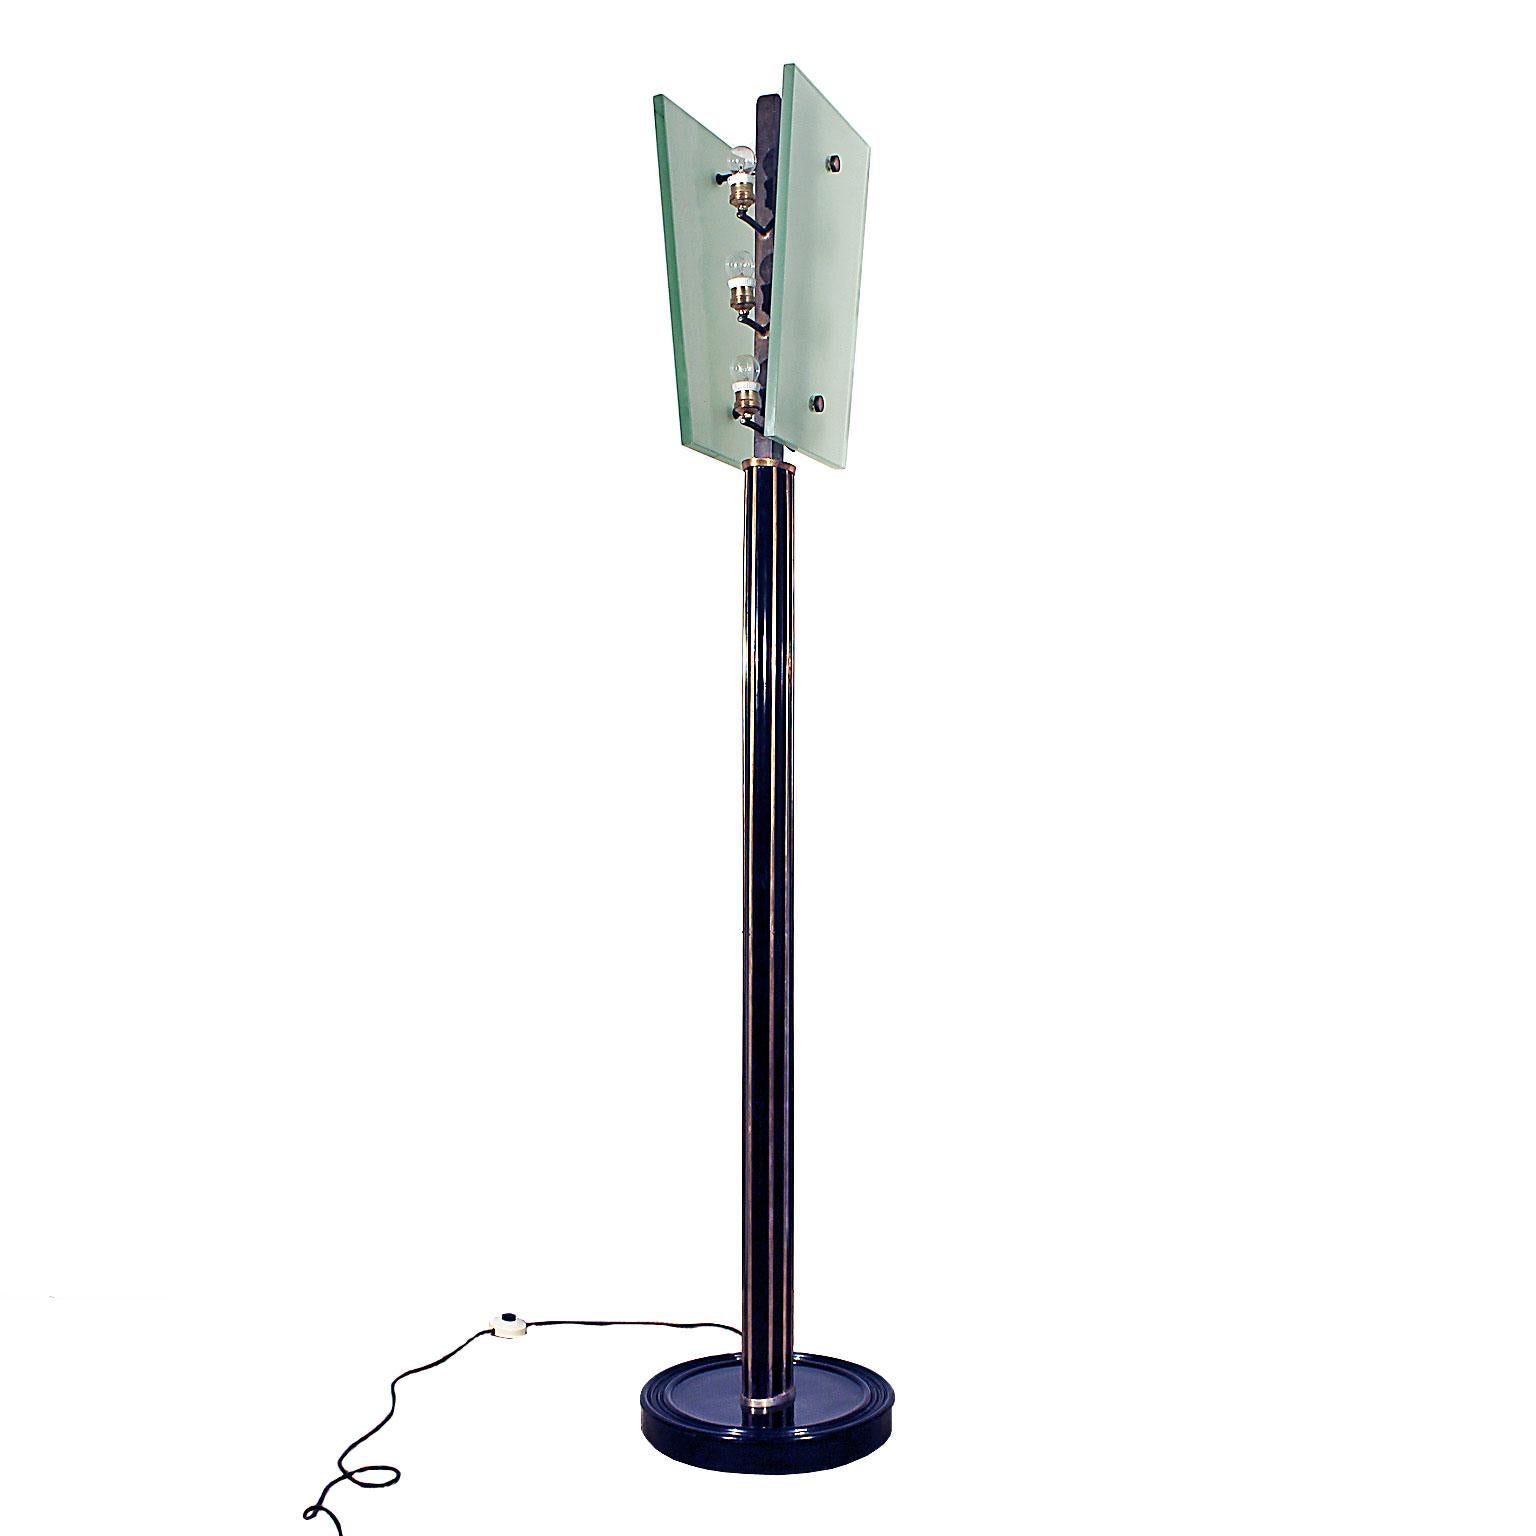 Lampe sur pied Art Déco, deux plaques de verre épaisses, six lumières, pied en bois poli français, accessoires en laiton.
Dans le style de Fontana Arte.
Italie, vers 1930.